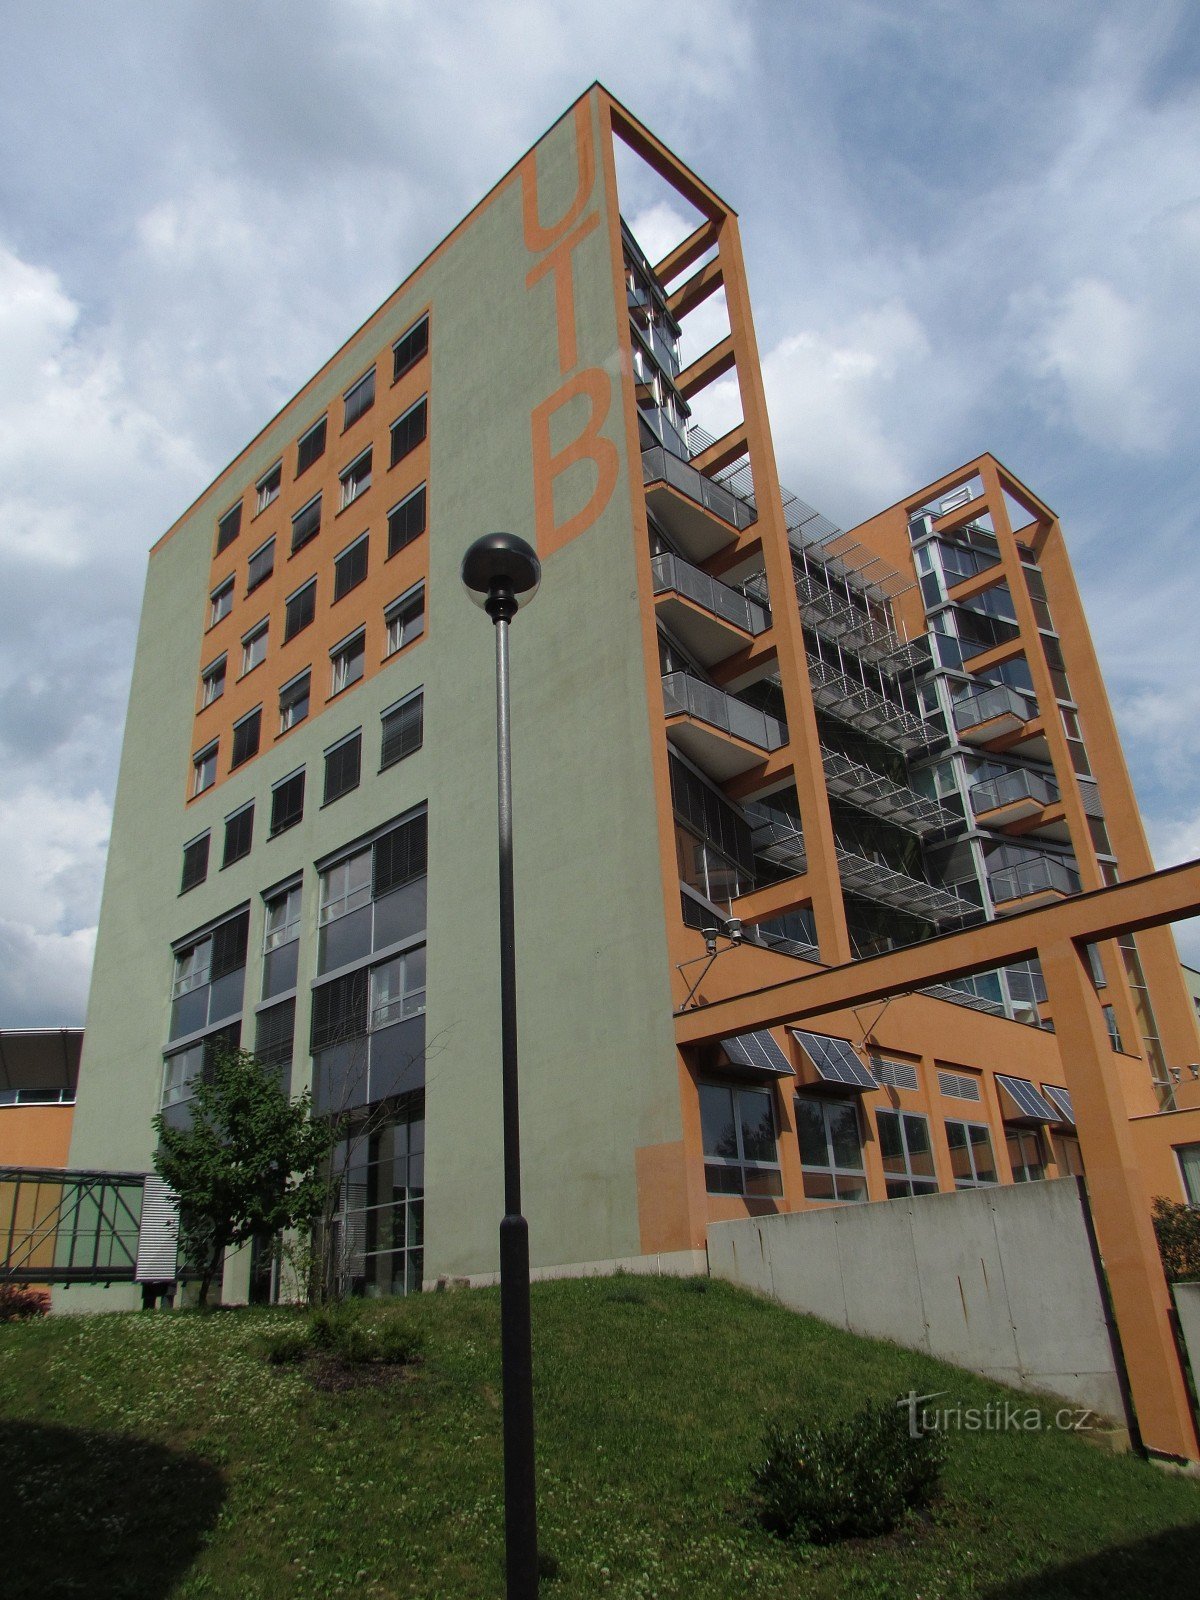 Zlín - TBU-byggnaden - Fakulteten för tillämpad informatik